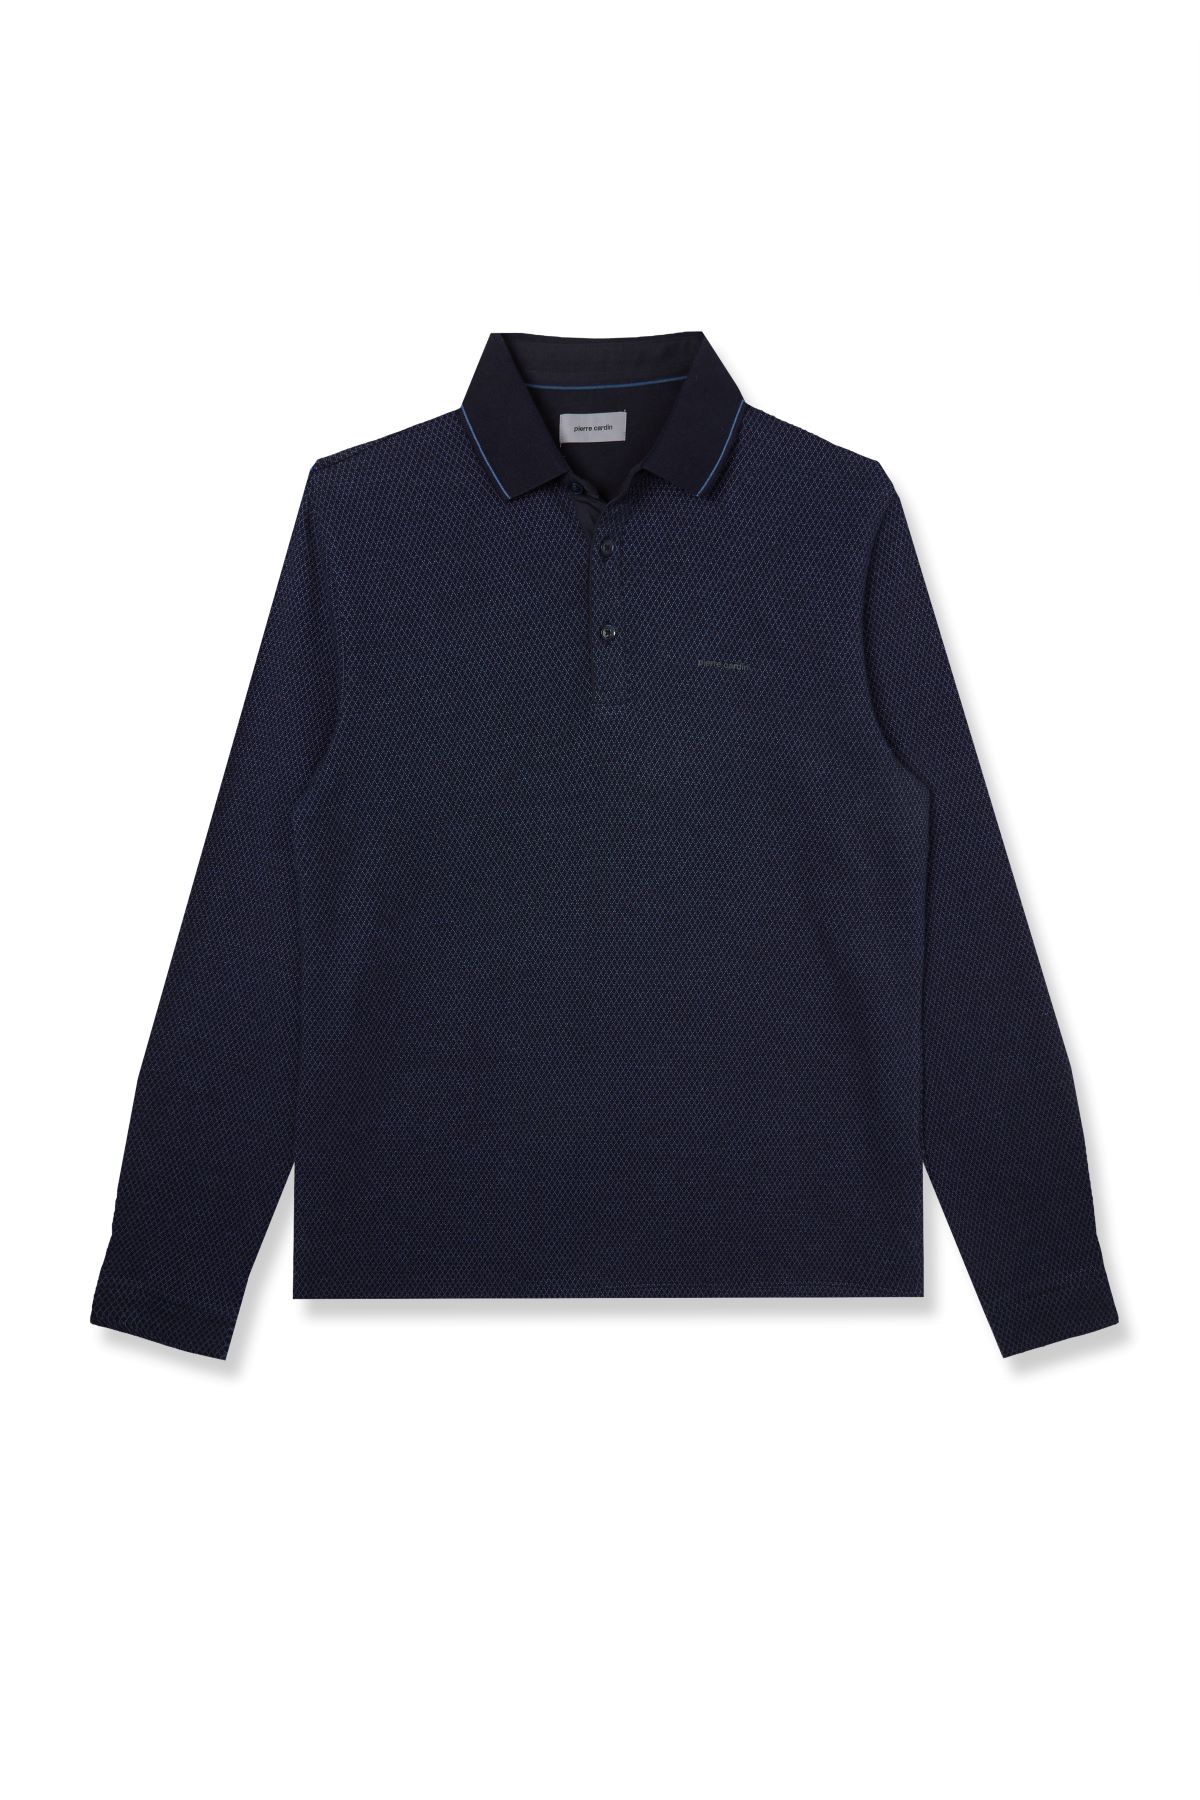 Pierre Cardin pánské triko s dlouhým rukávem a límečkem 30324.3027 6124 Modrá XXXL